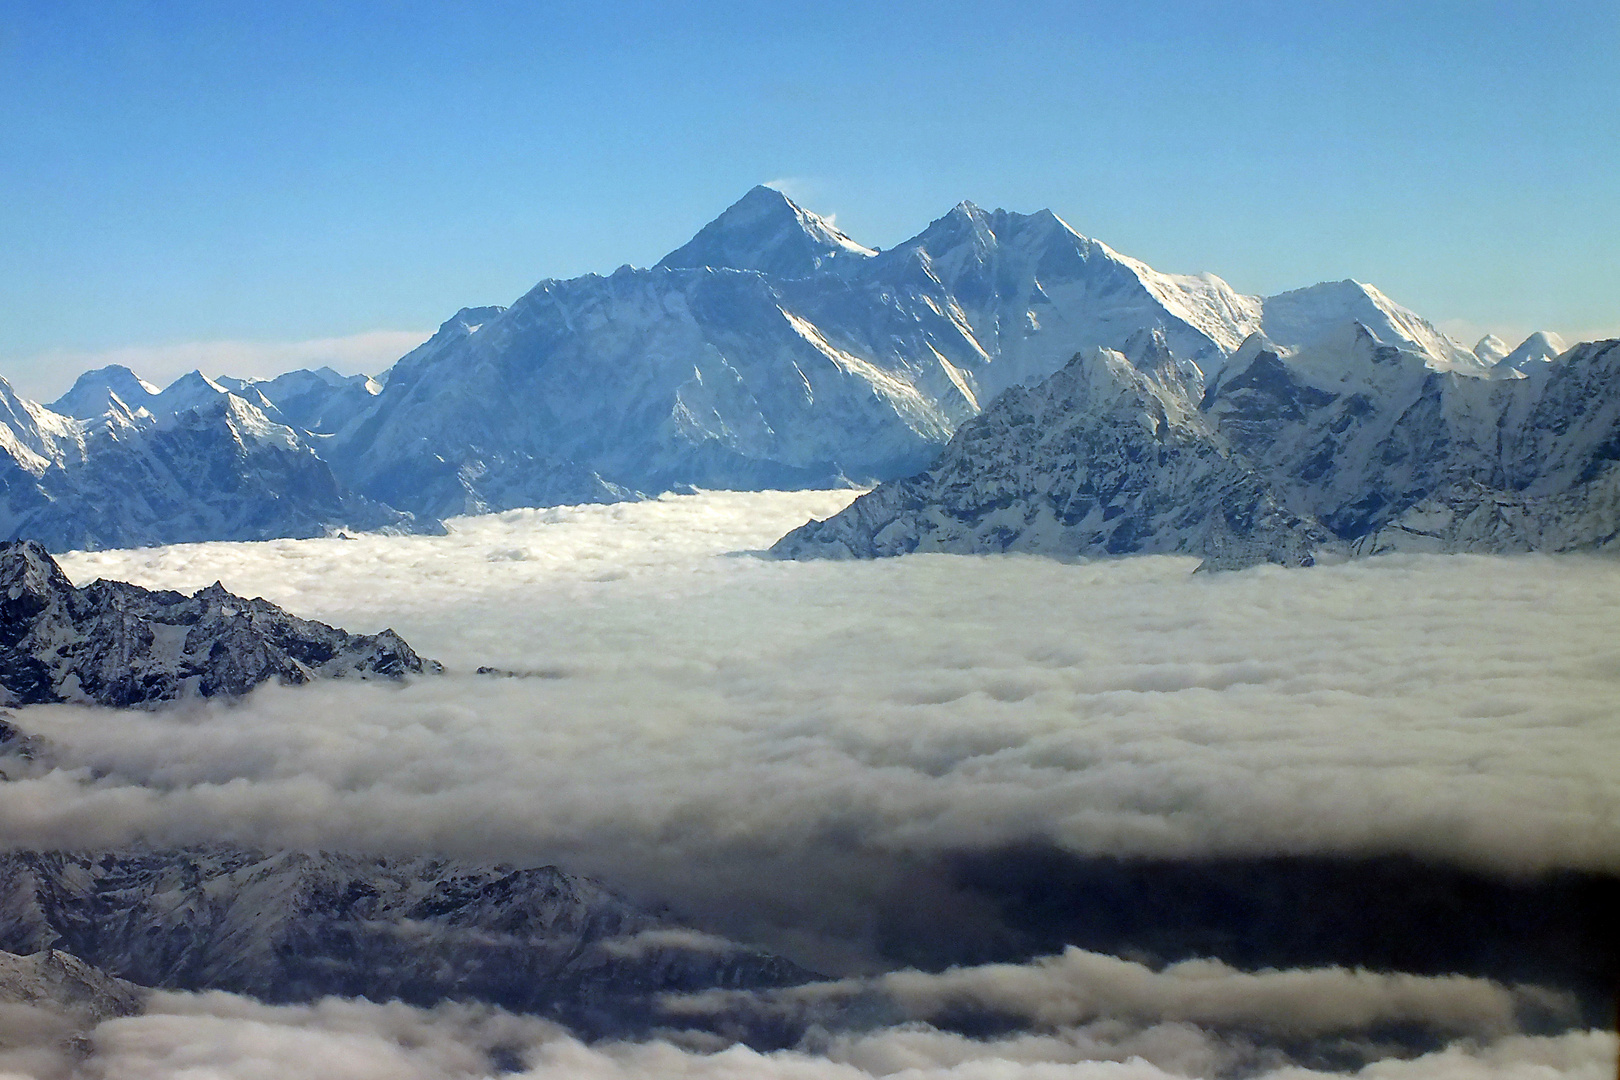 Nepal: Mount Everest, Blick aus dem Flugzeug auf den mit 8850m höchsten Berg der Erde